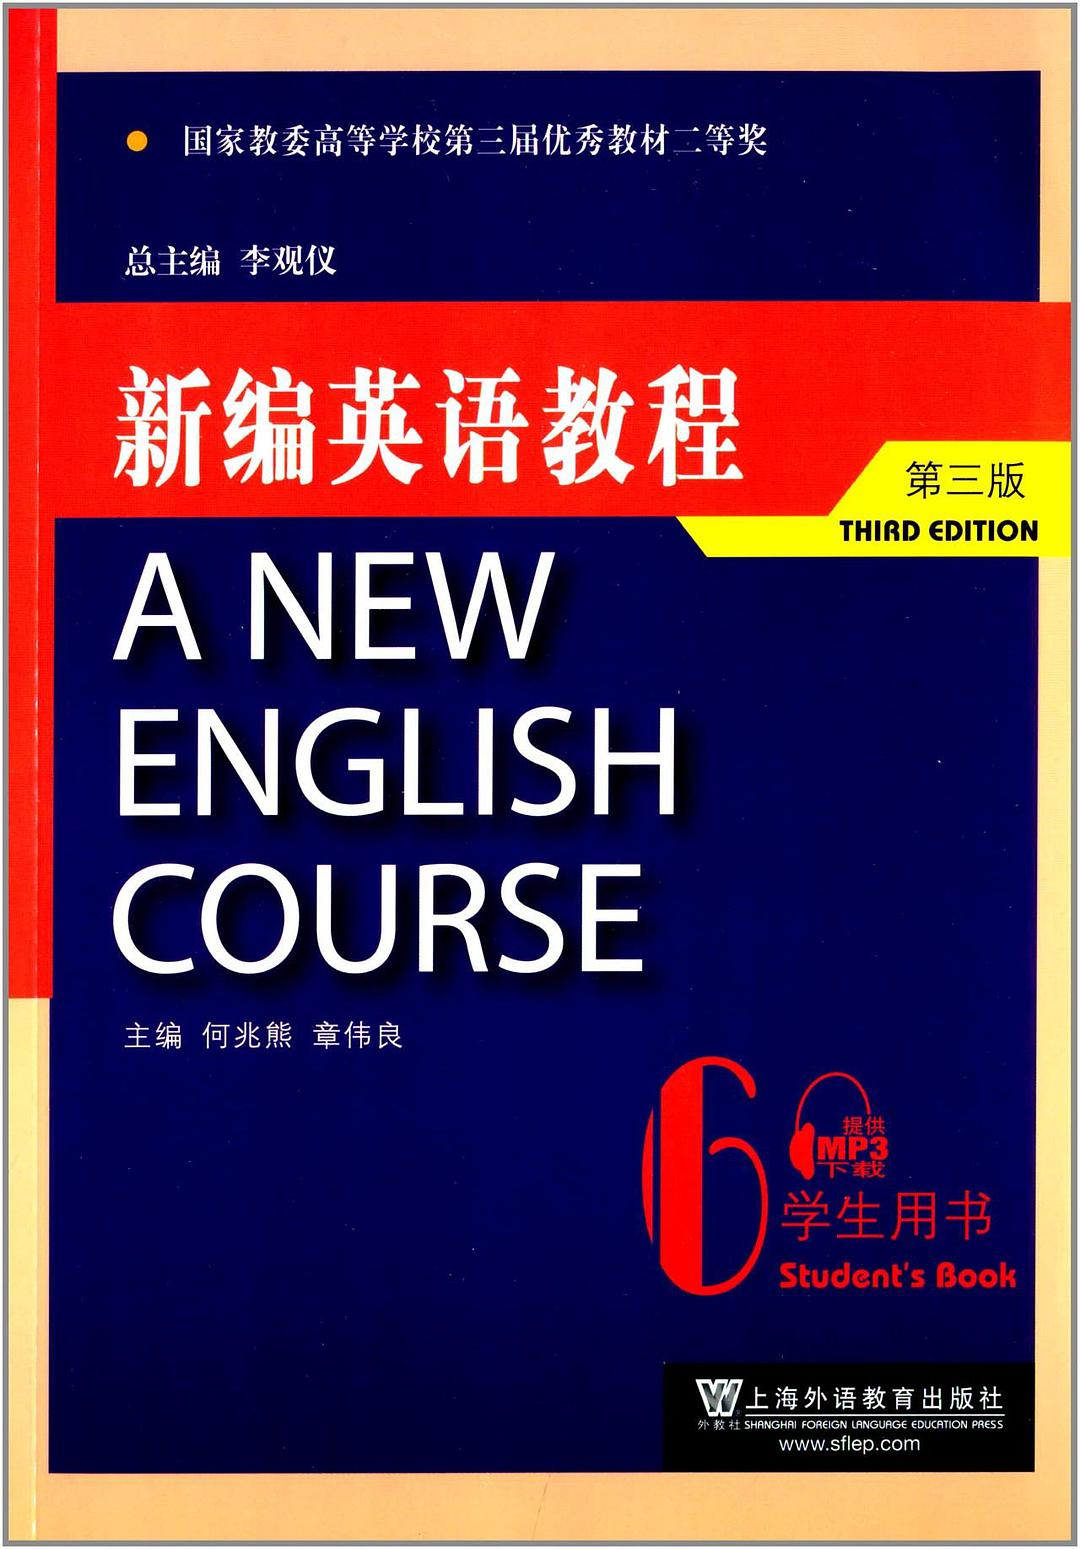 新编英语教程 6 学生用书 6 Student's book